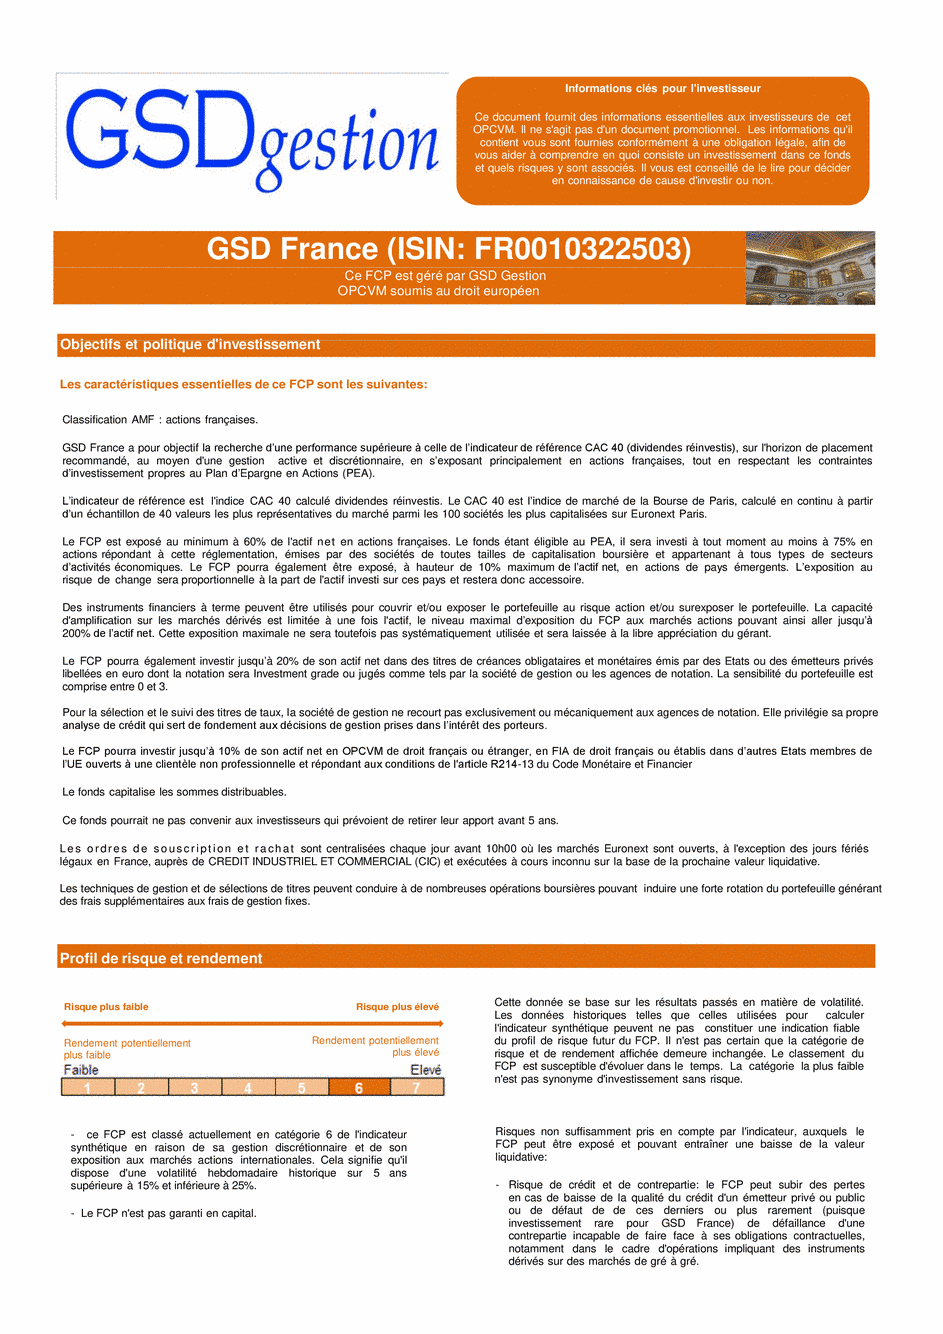 DICI-Prospectus Complet GSD France - 16/01/2019 - Français